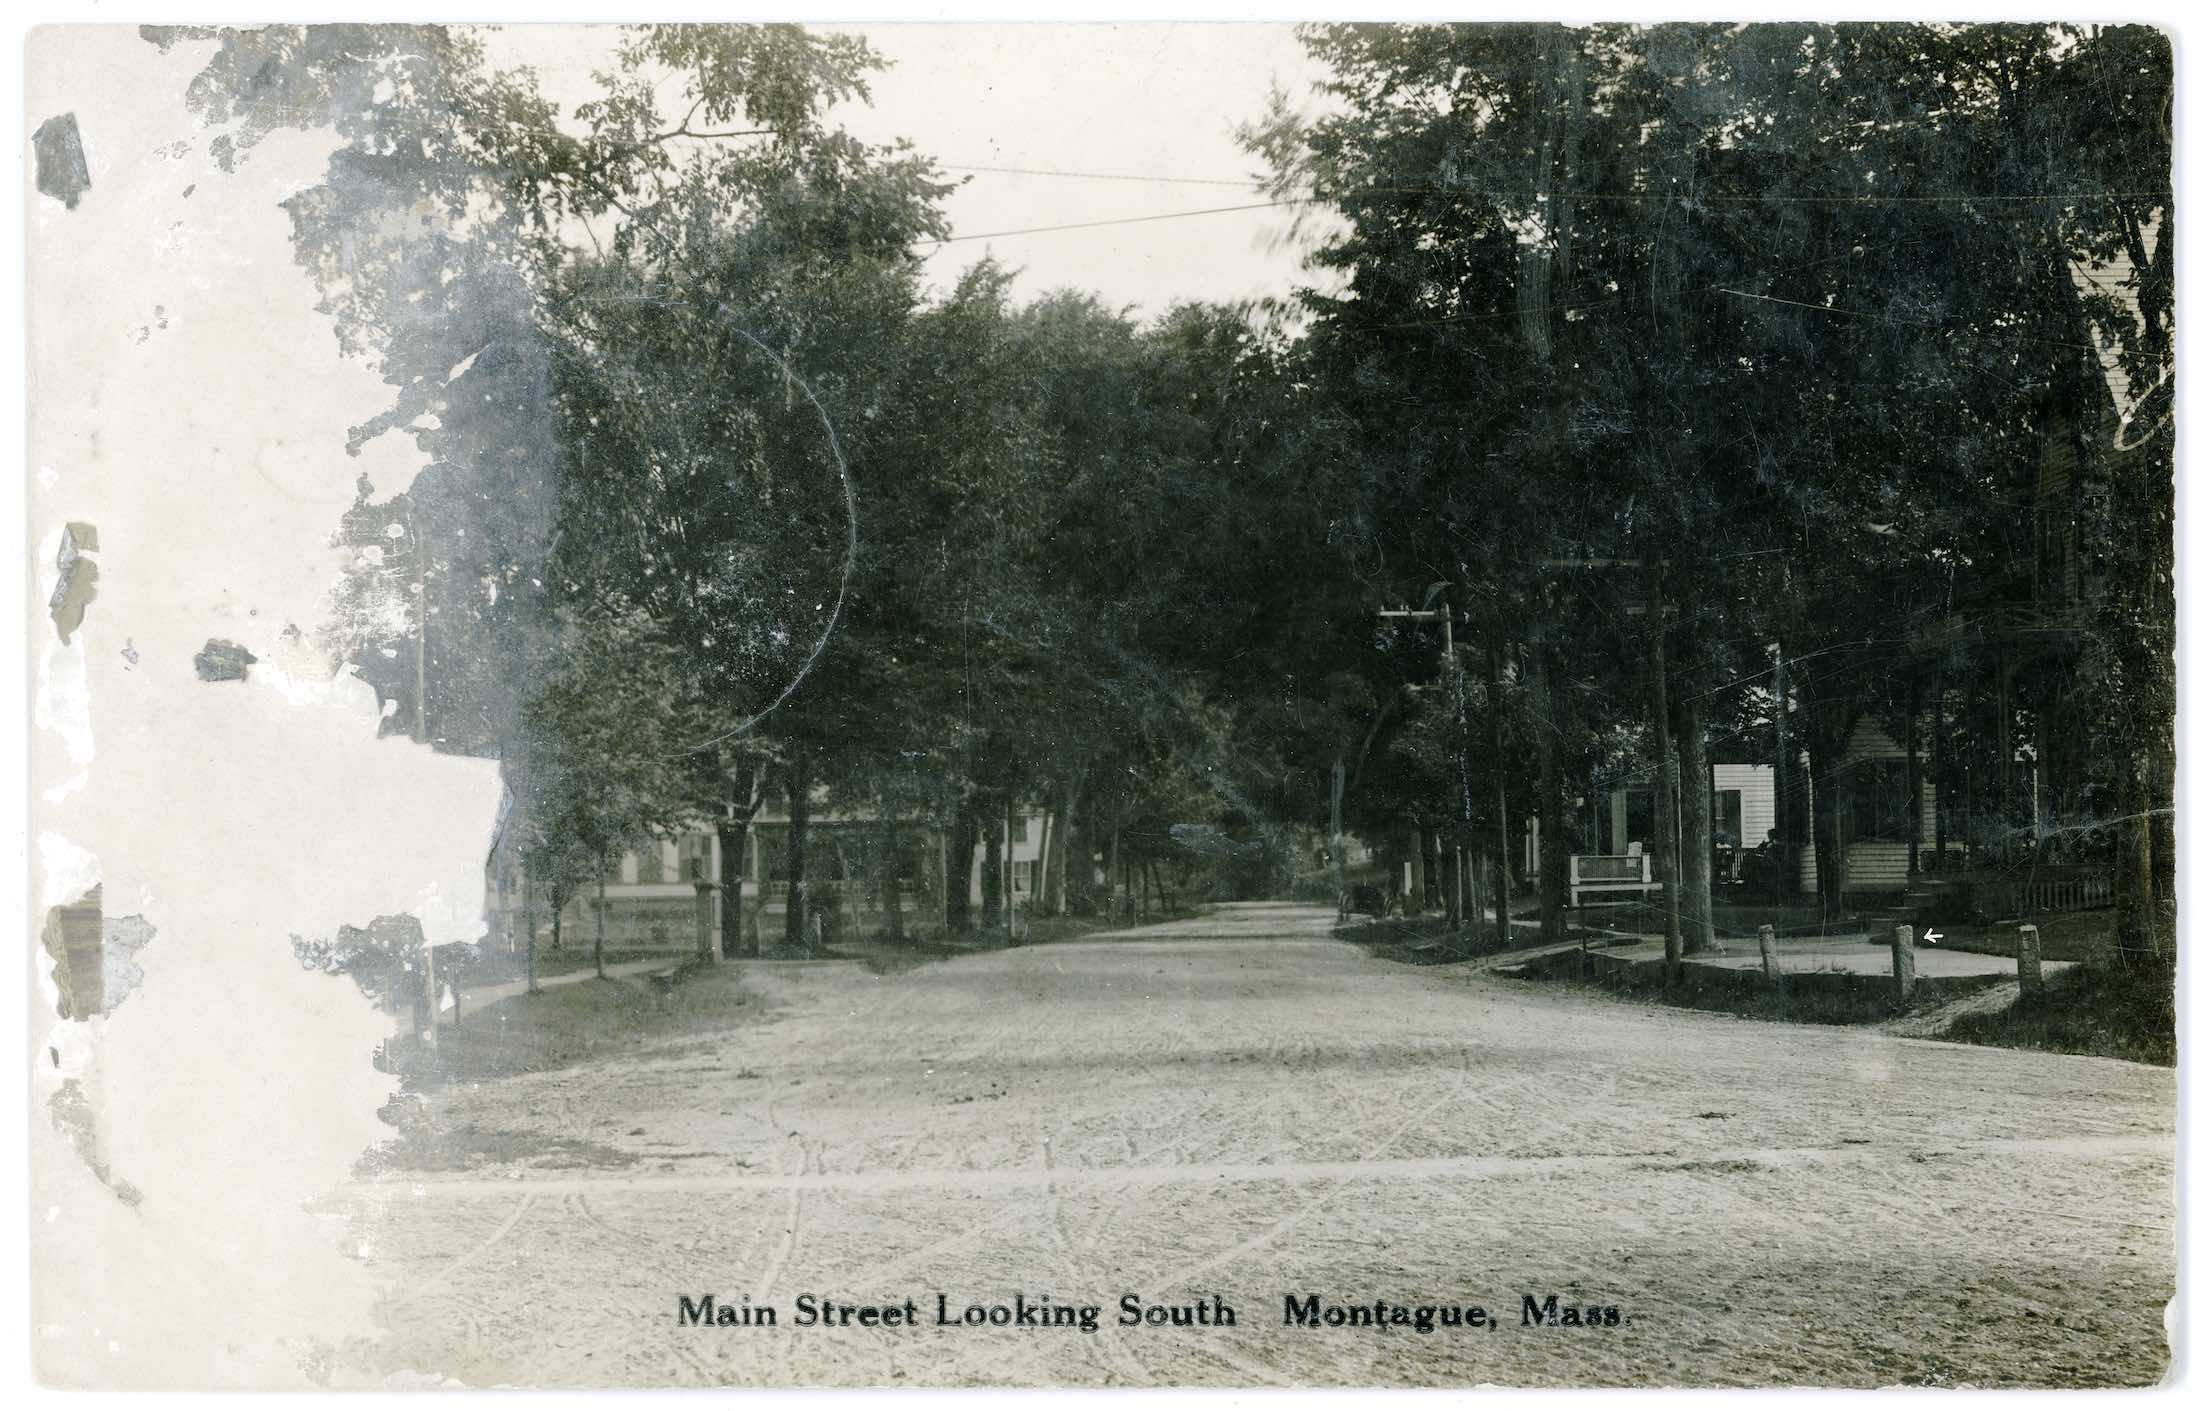 Main Street Looking South Montague, Mass.